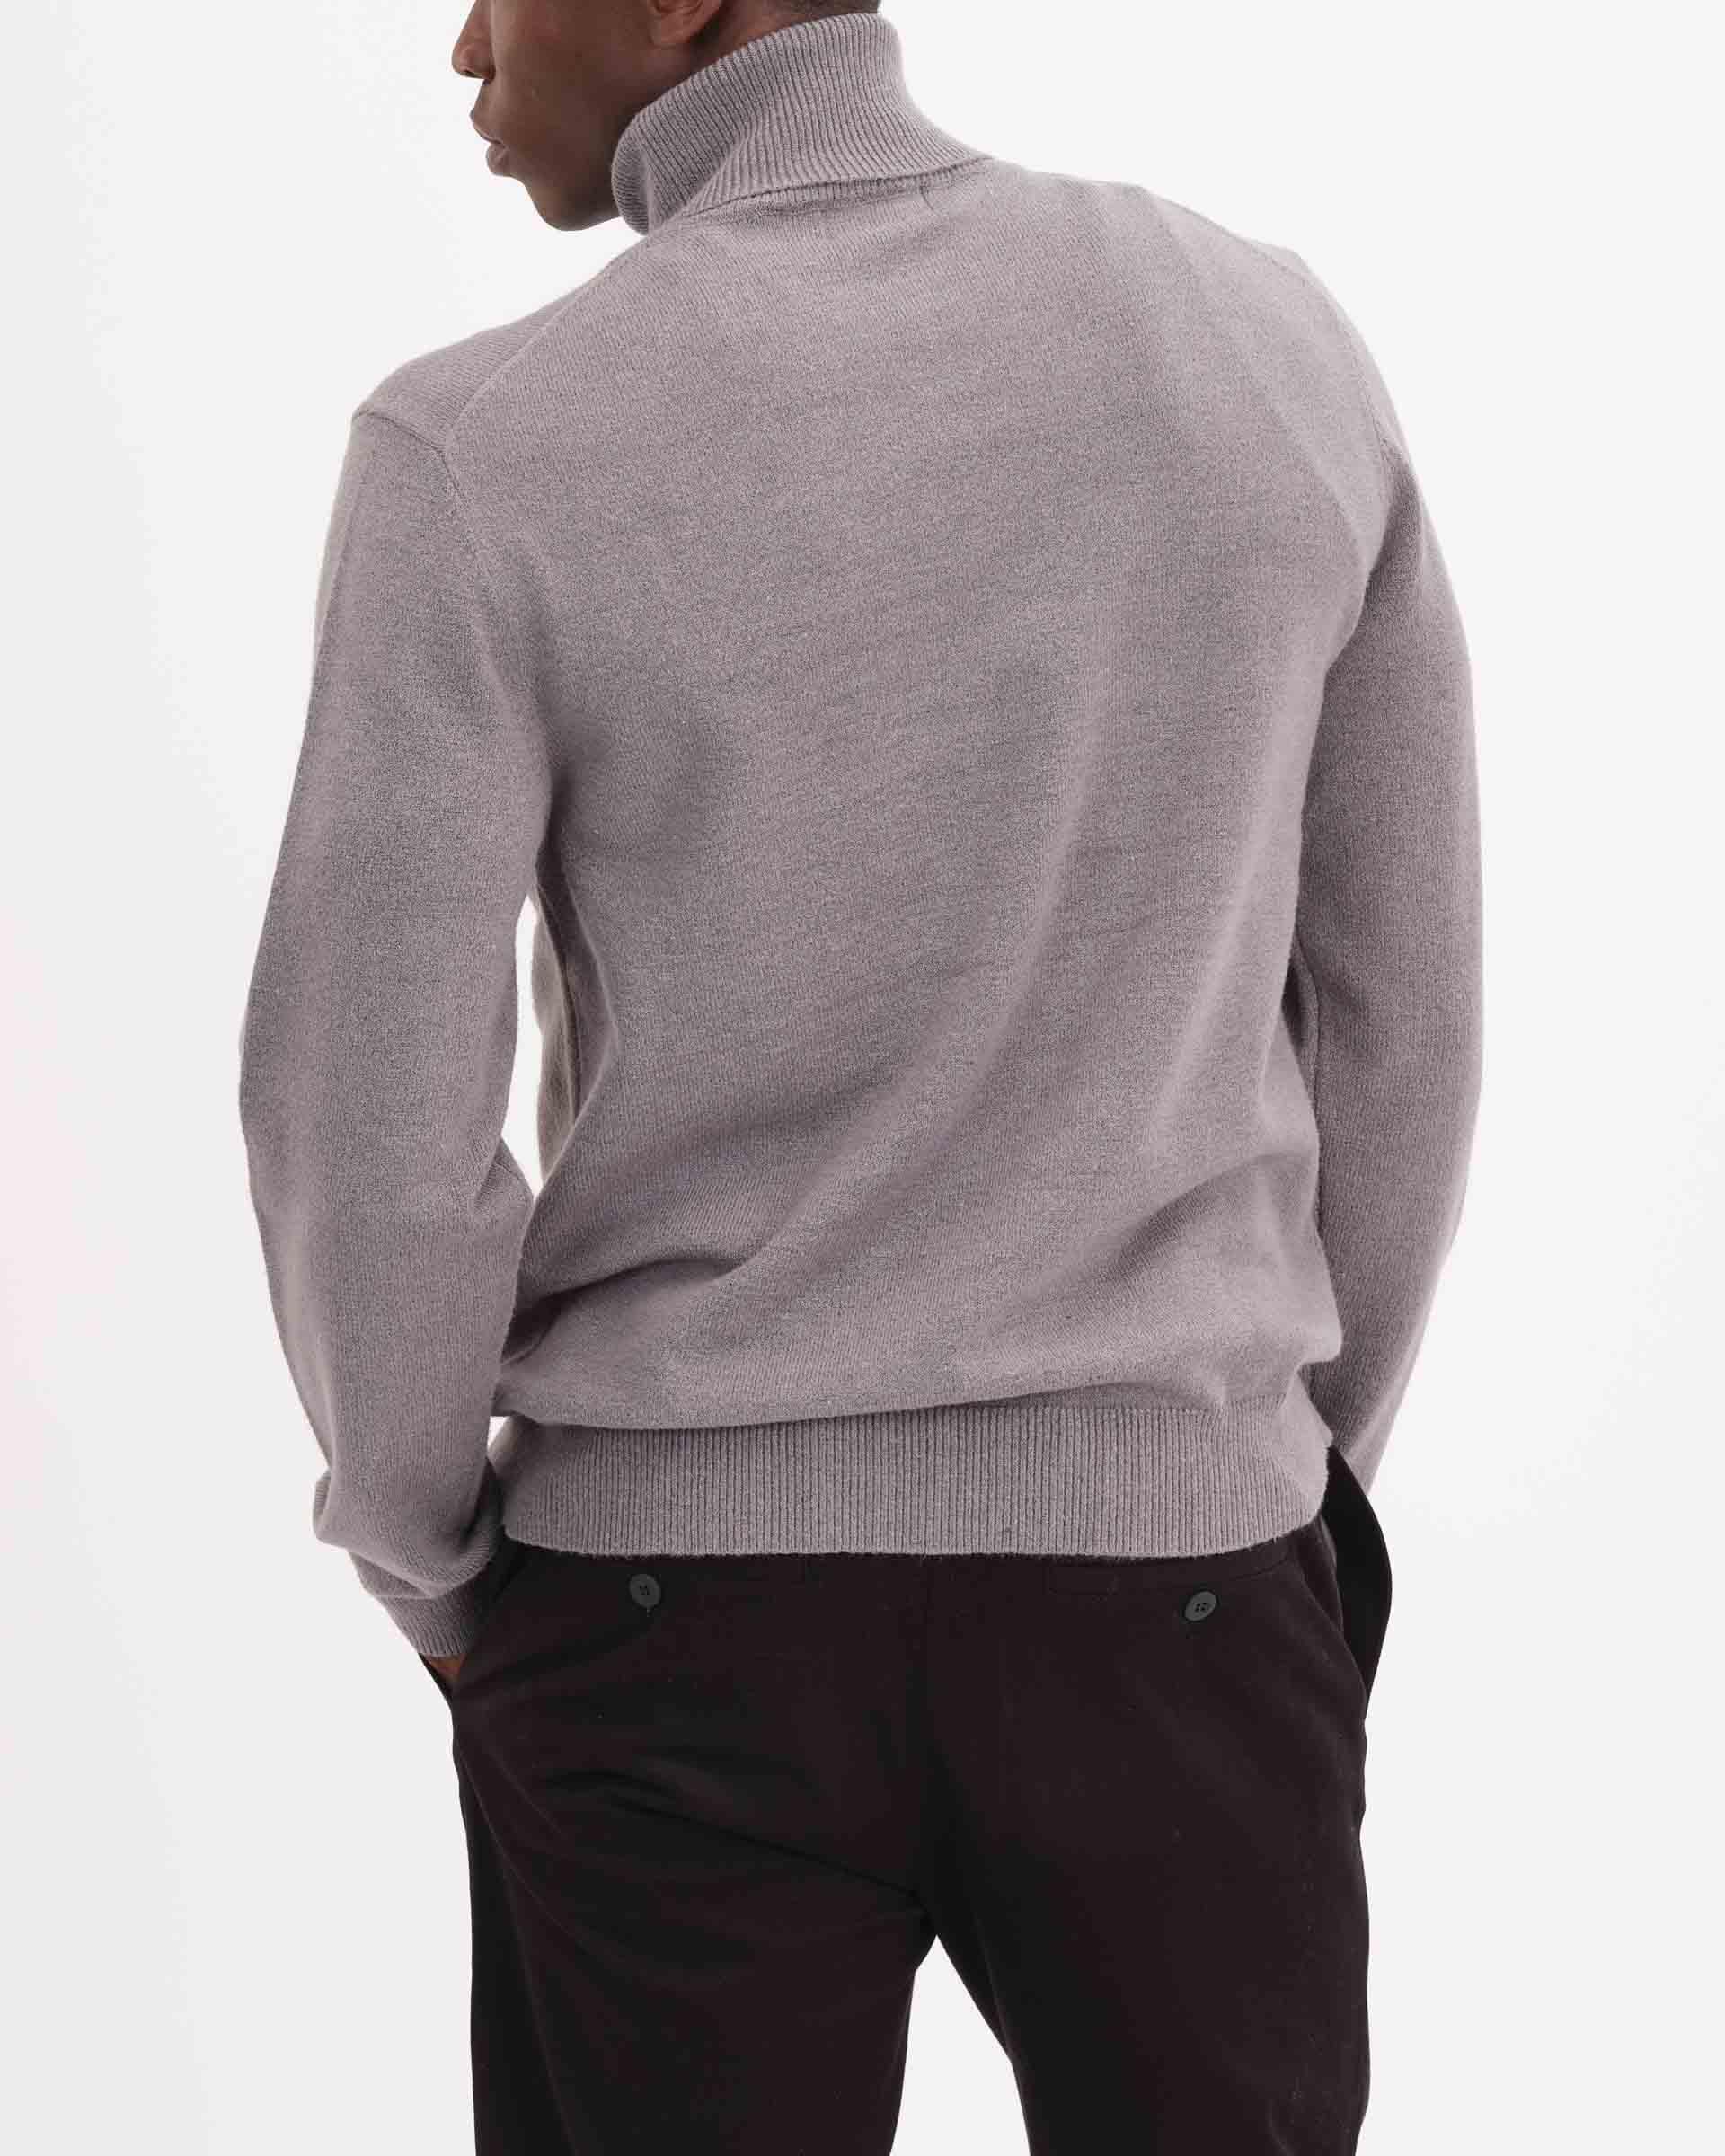 Men's Grey Turtleneck Sweaters